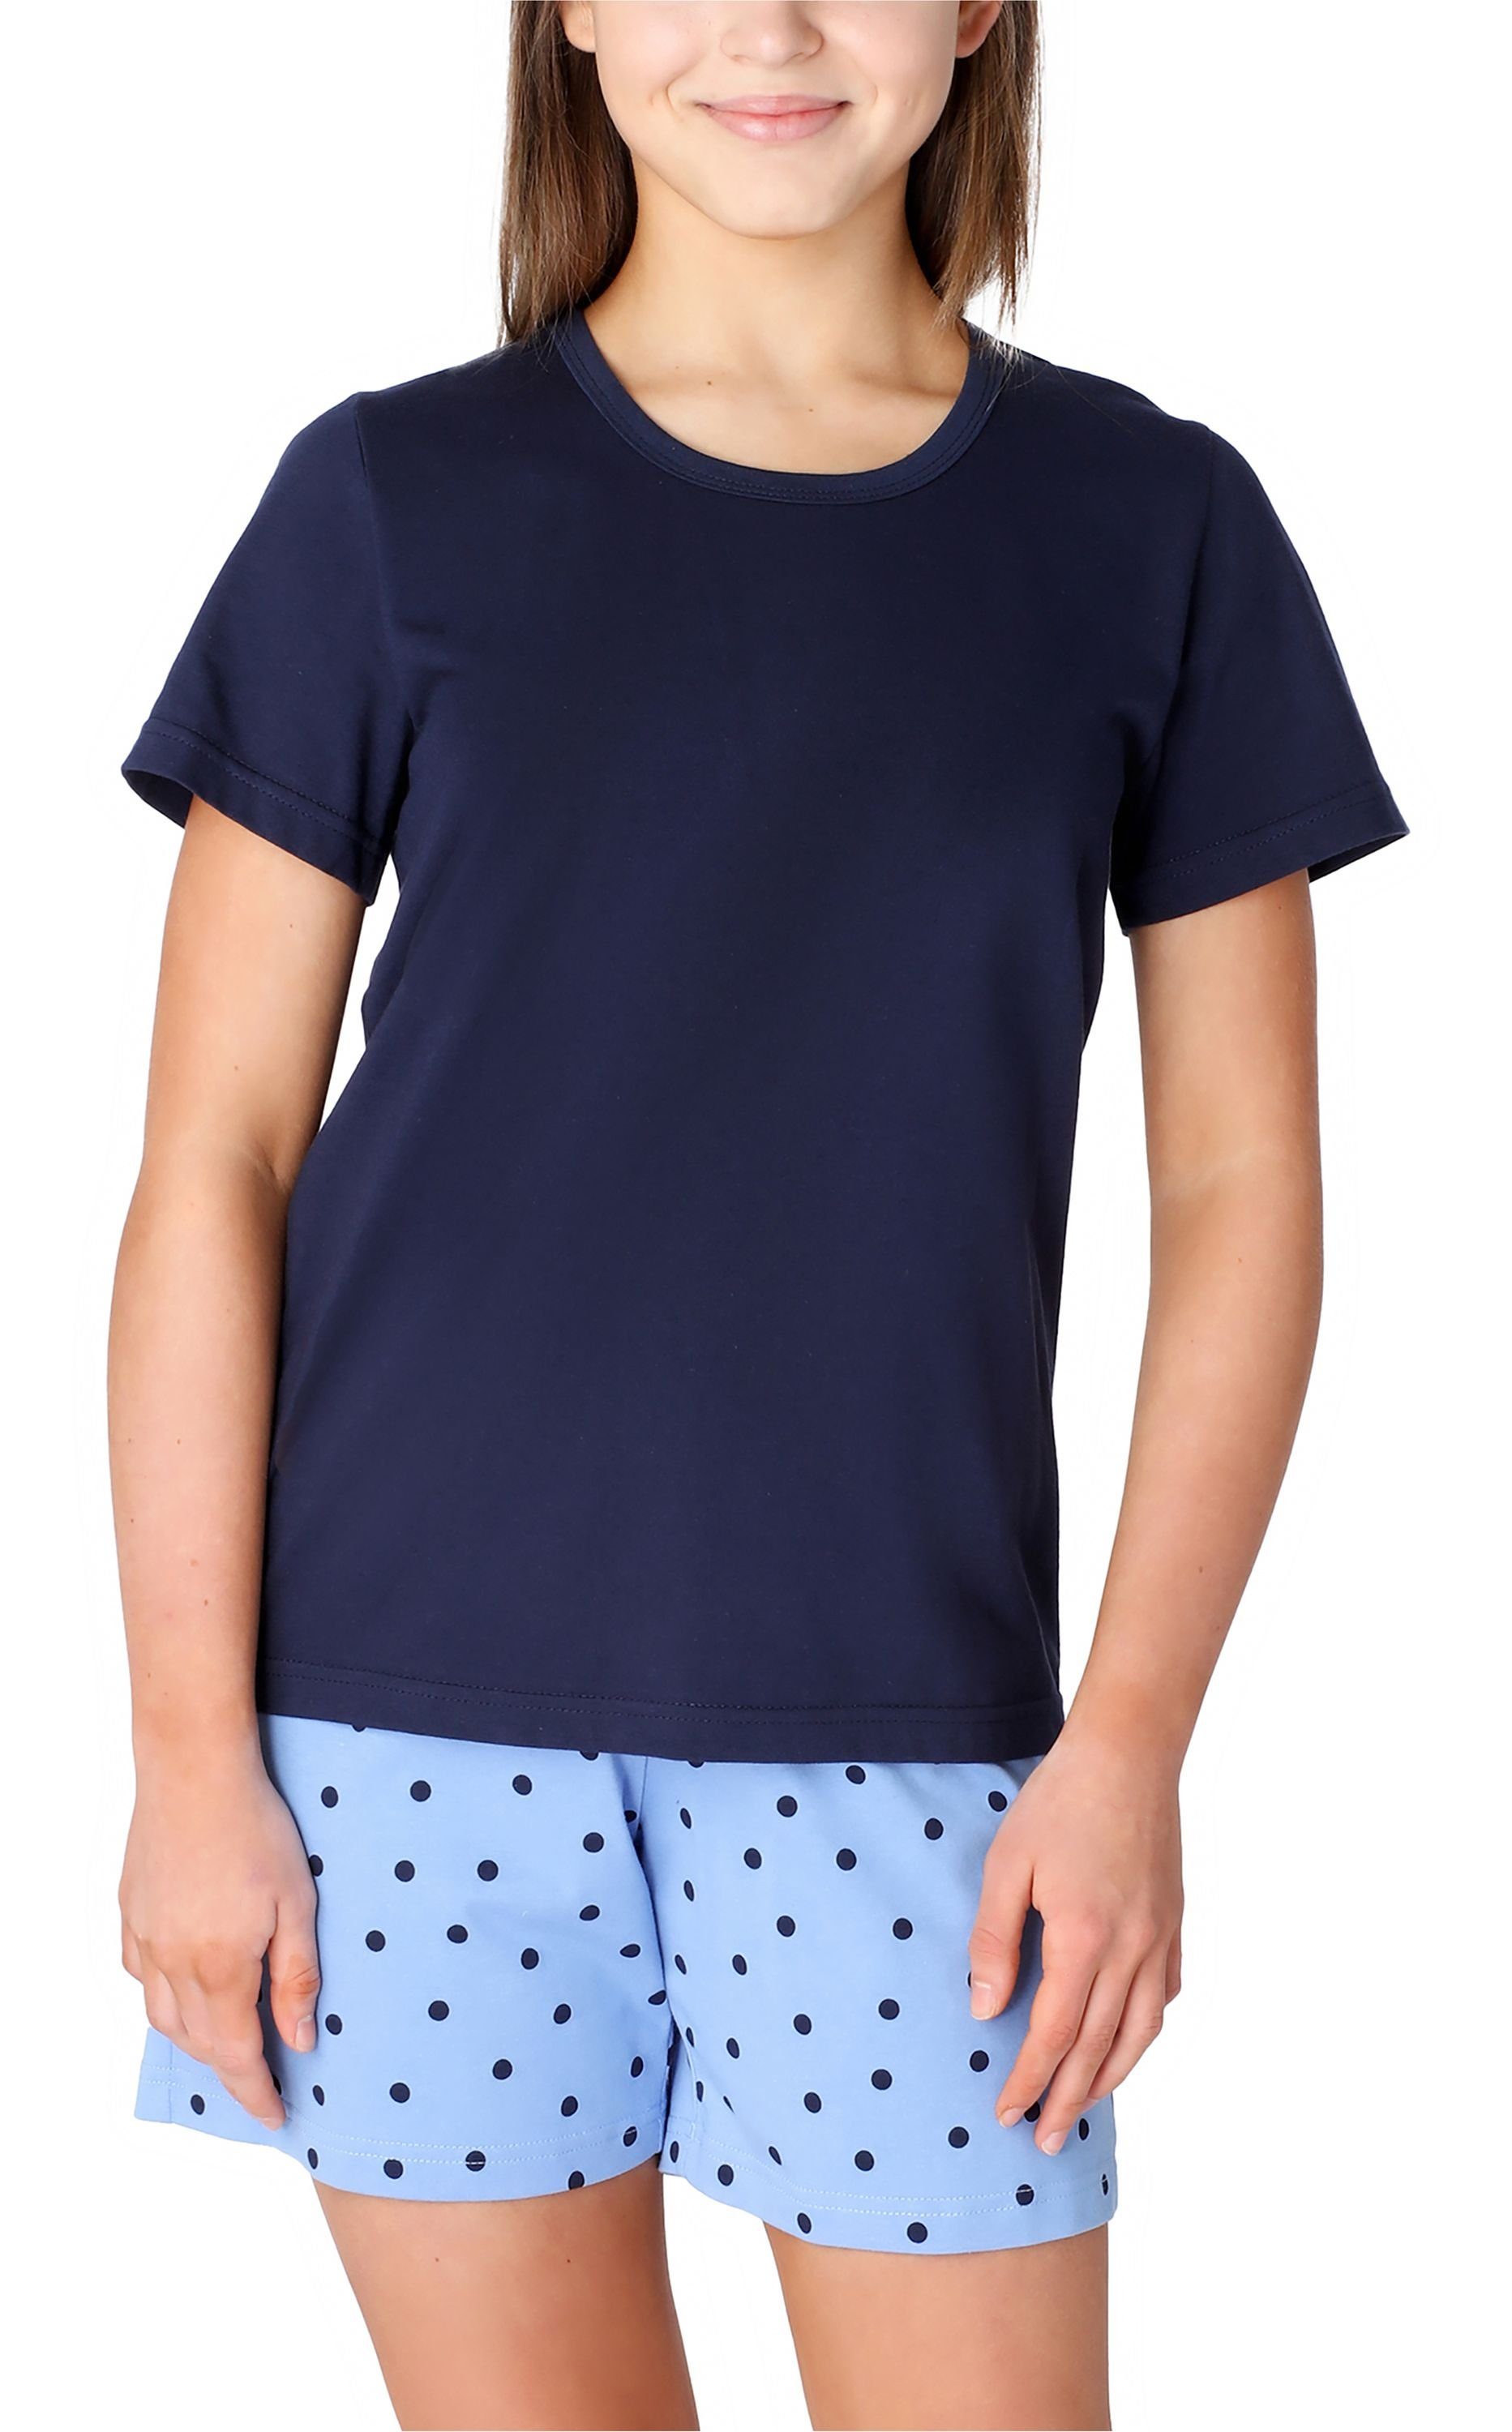 Merry Style Schlafanzug Mädchen Schlafanzüge Kurz aus Baumwolle Pyjama Set MS10-265 Marine/Blau/Punkte